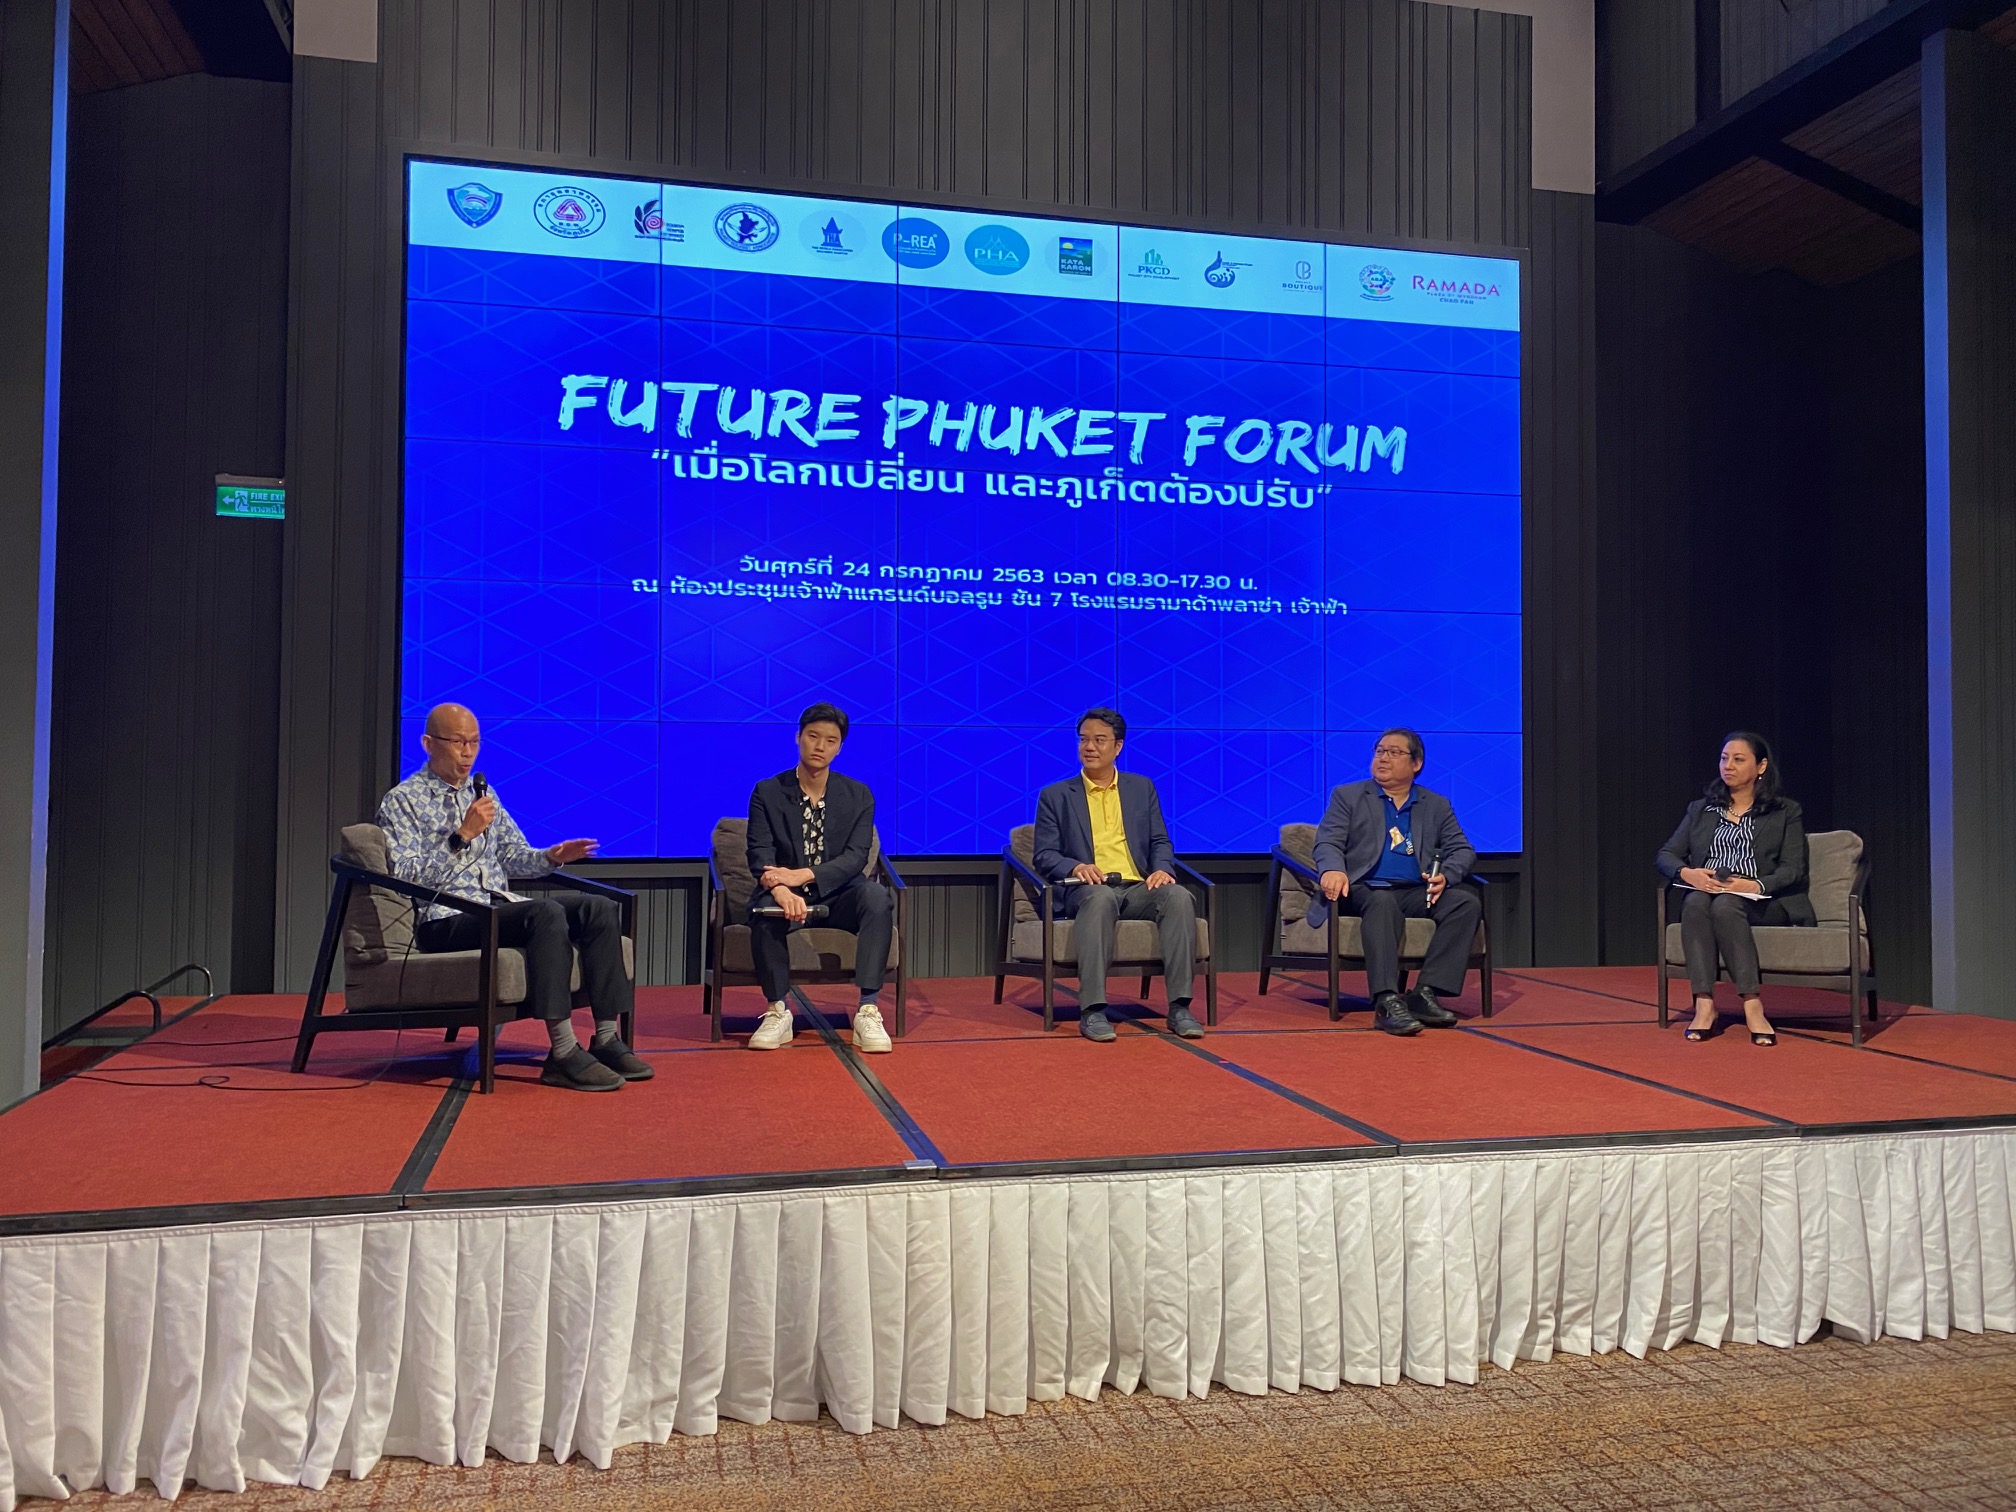 12 องค์กรร่วมภาคเอกชนภูเก็ต จัดสัมมนา Future Phuket Forum เมื่อโลกเปลี่ยน ภูเก็ตต้องปรับ”